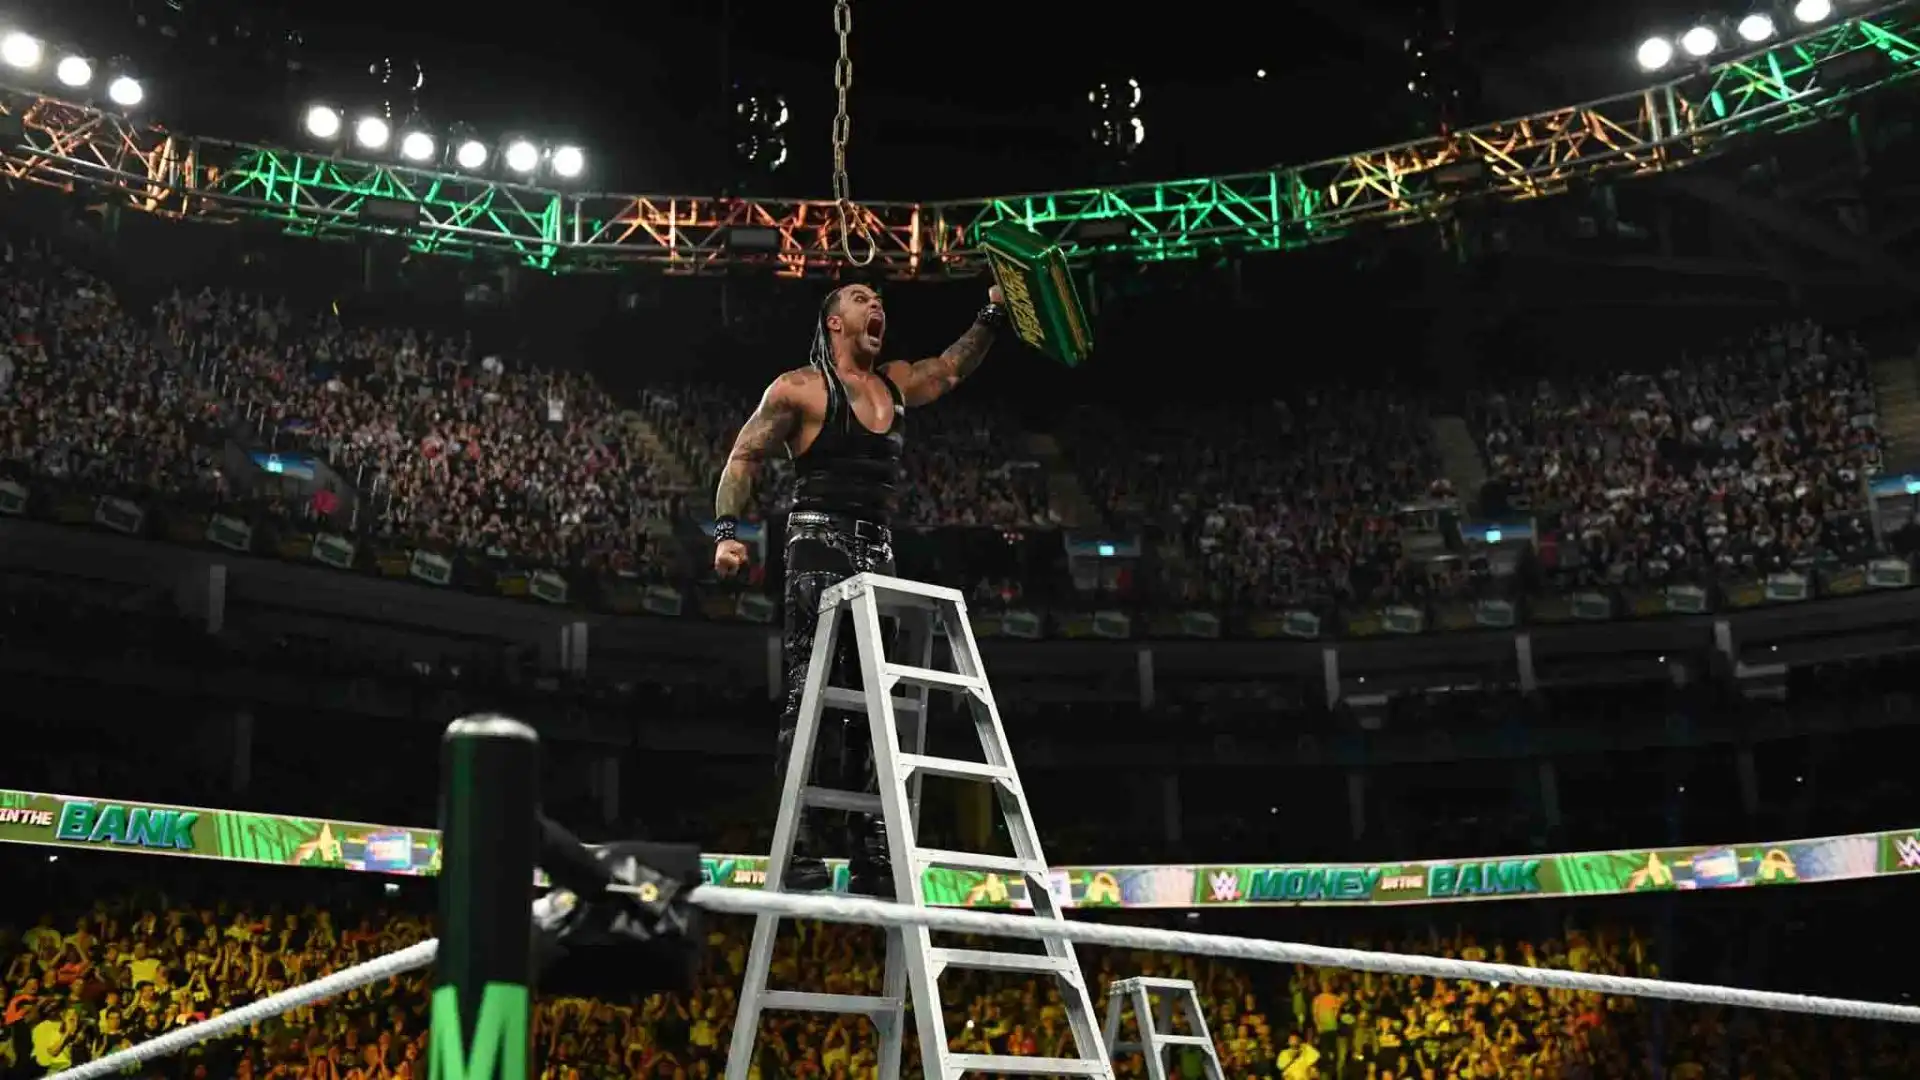 l membro del Judgment Day, fresco vincitore del titolo a WrestleMania XL, dopo aver incassato il Money in the Bank ai danni di Drew McIntyre, difenderà la corona contro due avversari, in un Triple Threat Match.